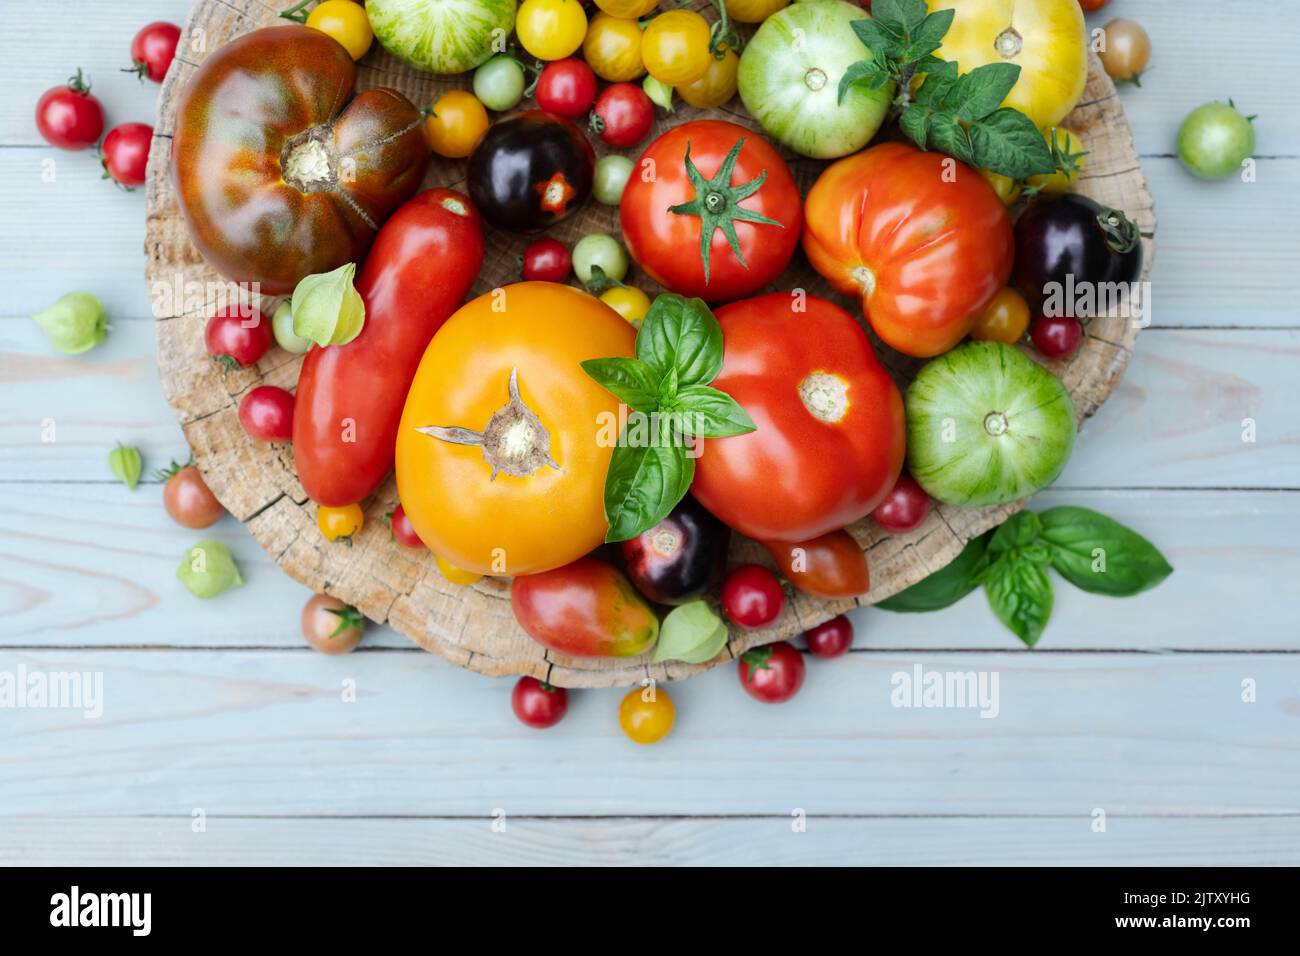 Différentes variétés genre de mélange de tomates rouges, jaunes, vertes et noires sur table en bois. Fond de tomates d'été colorées et fraîches, gros plan. Photographie alimentaire Banque D'Images